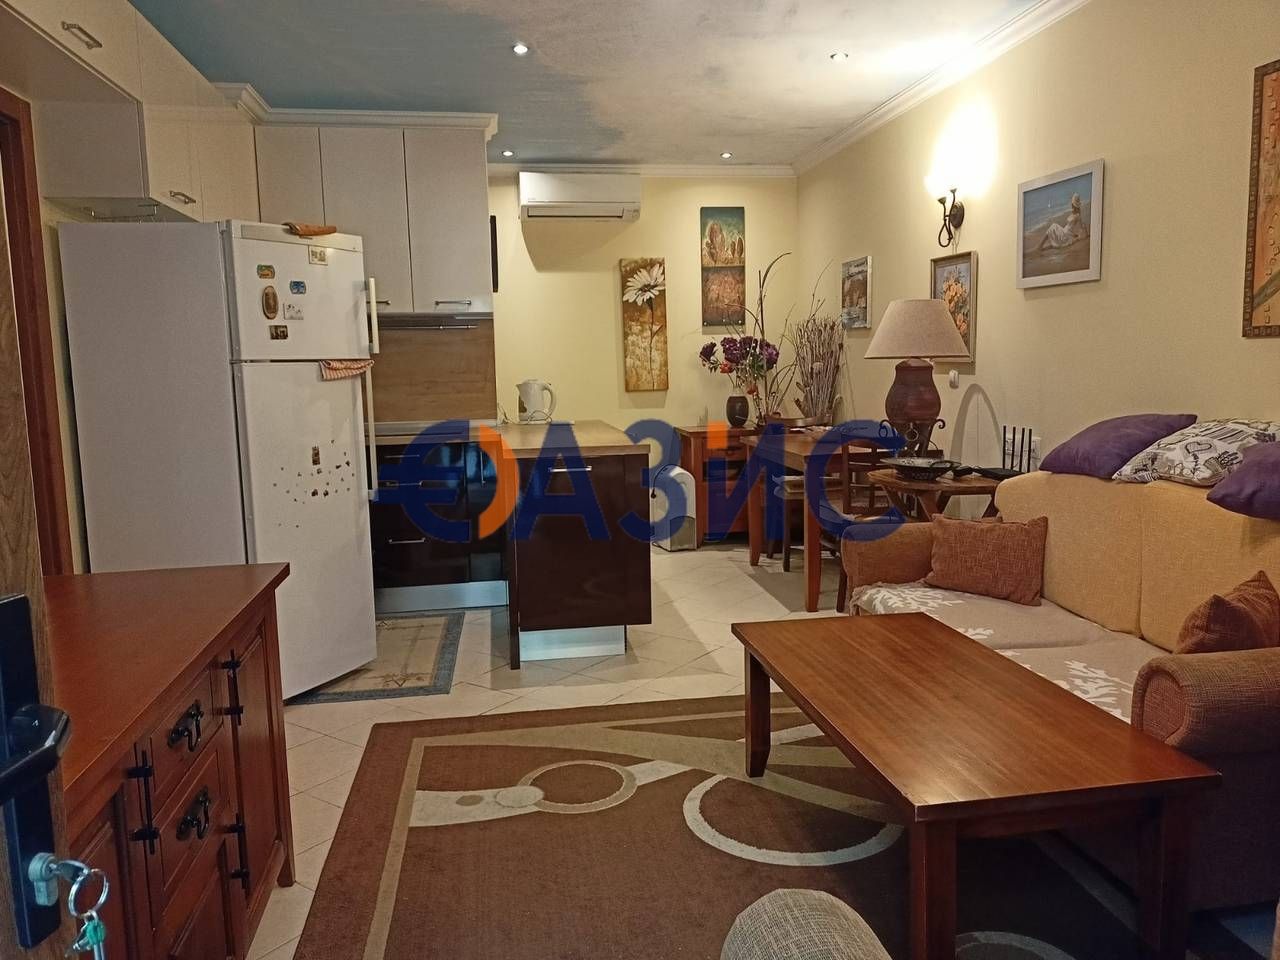 Apartment in Sozopol, Bulgaria, 94 sq.m - picture 1